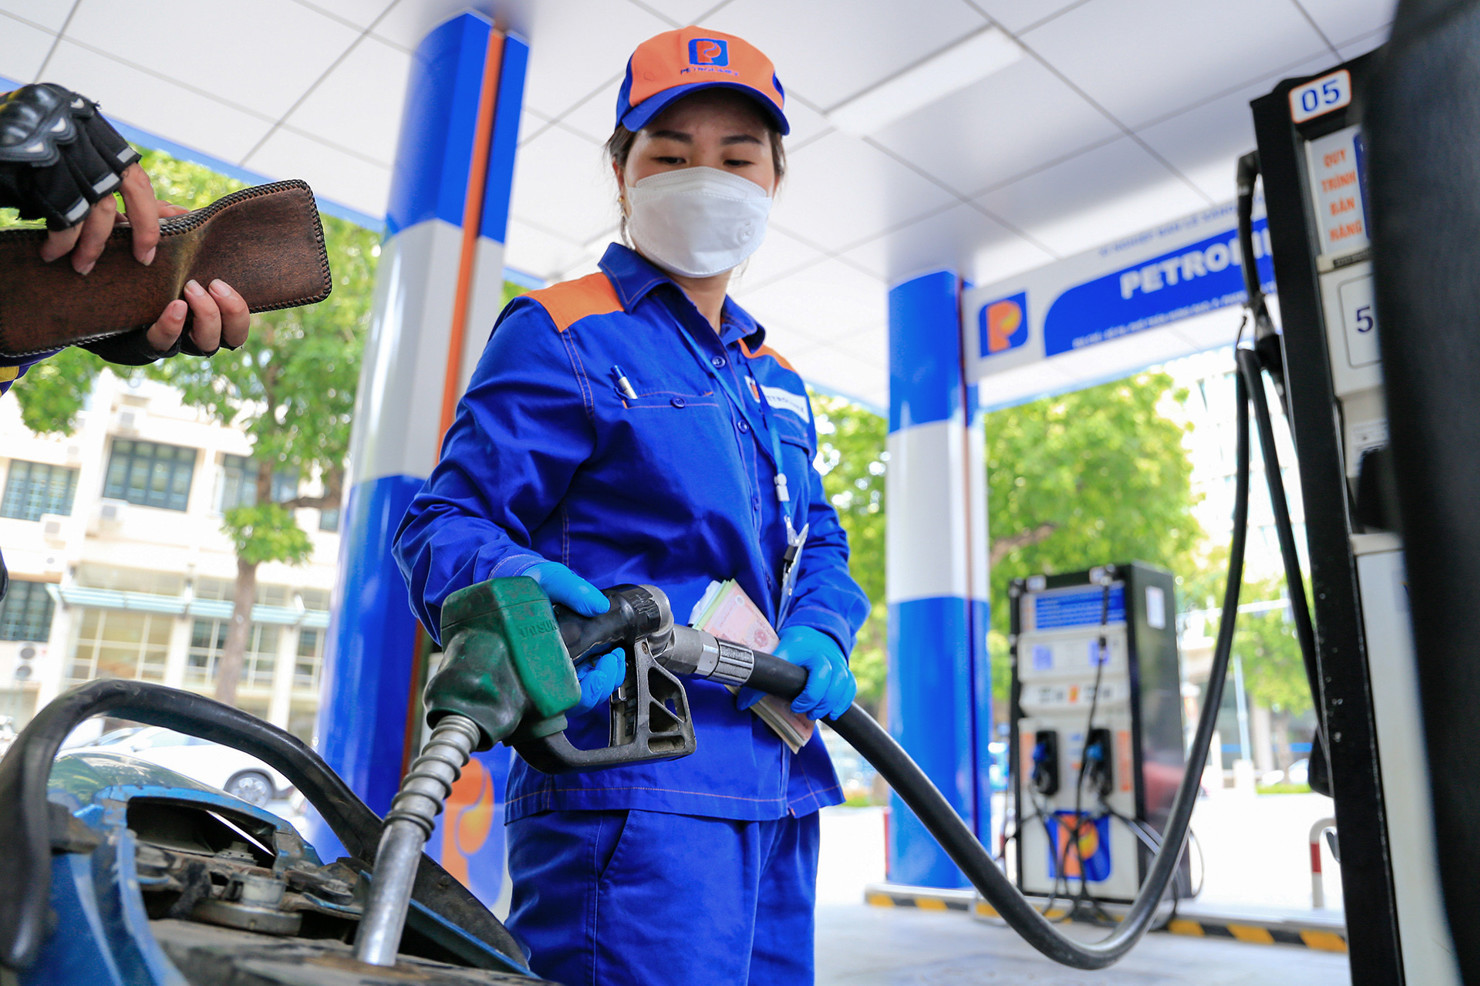 Thúc đẩy hoá đơn điện tử trong kinh doanh xăng dầu: Bộ KH&CN khẩn trương vào cuộc sau chỉ đạo của Chính phủ